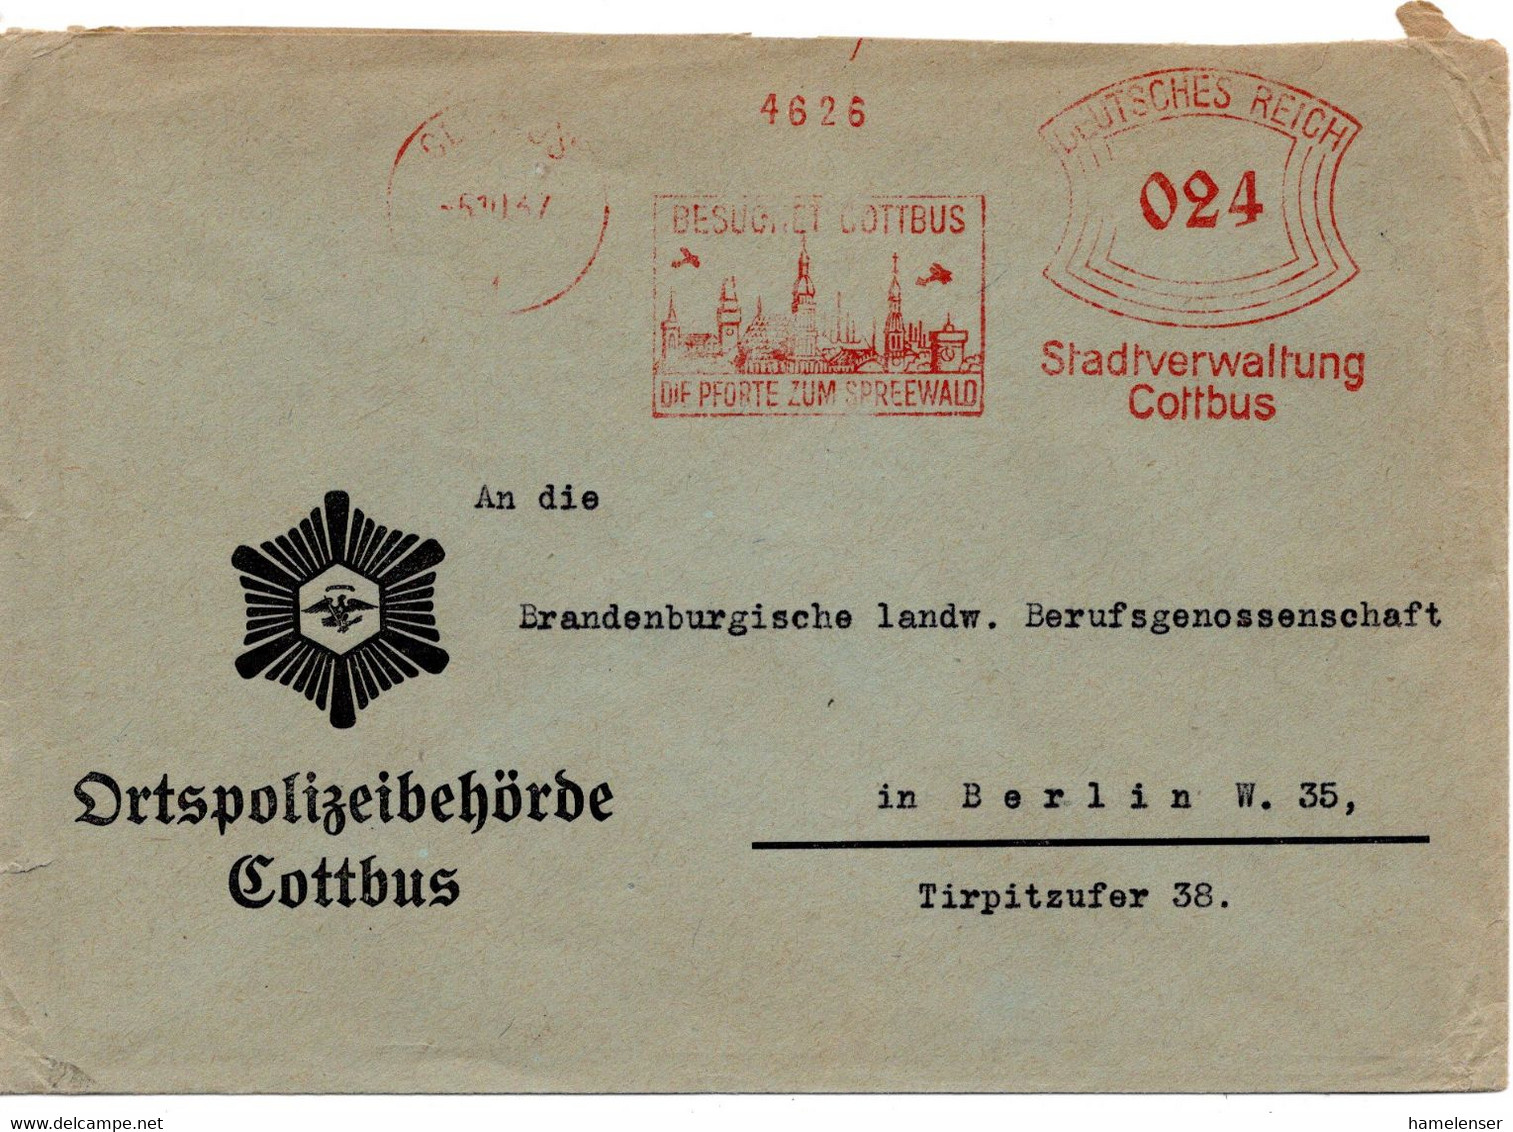 56593 - Deutsches Reich - 1937 - 24Pfg AbsFreistpl COTTBUS - BESUCHET COTTBUS ... -> Berlin, Abs; Ortspolizeibehoerde - Police - Gendarmerie